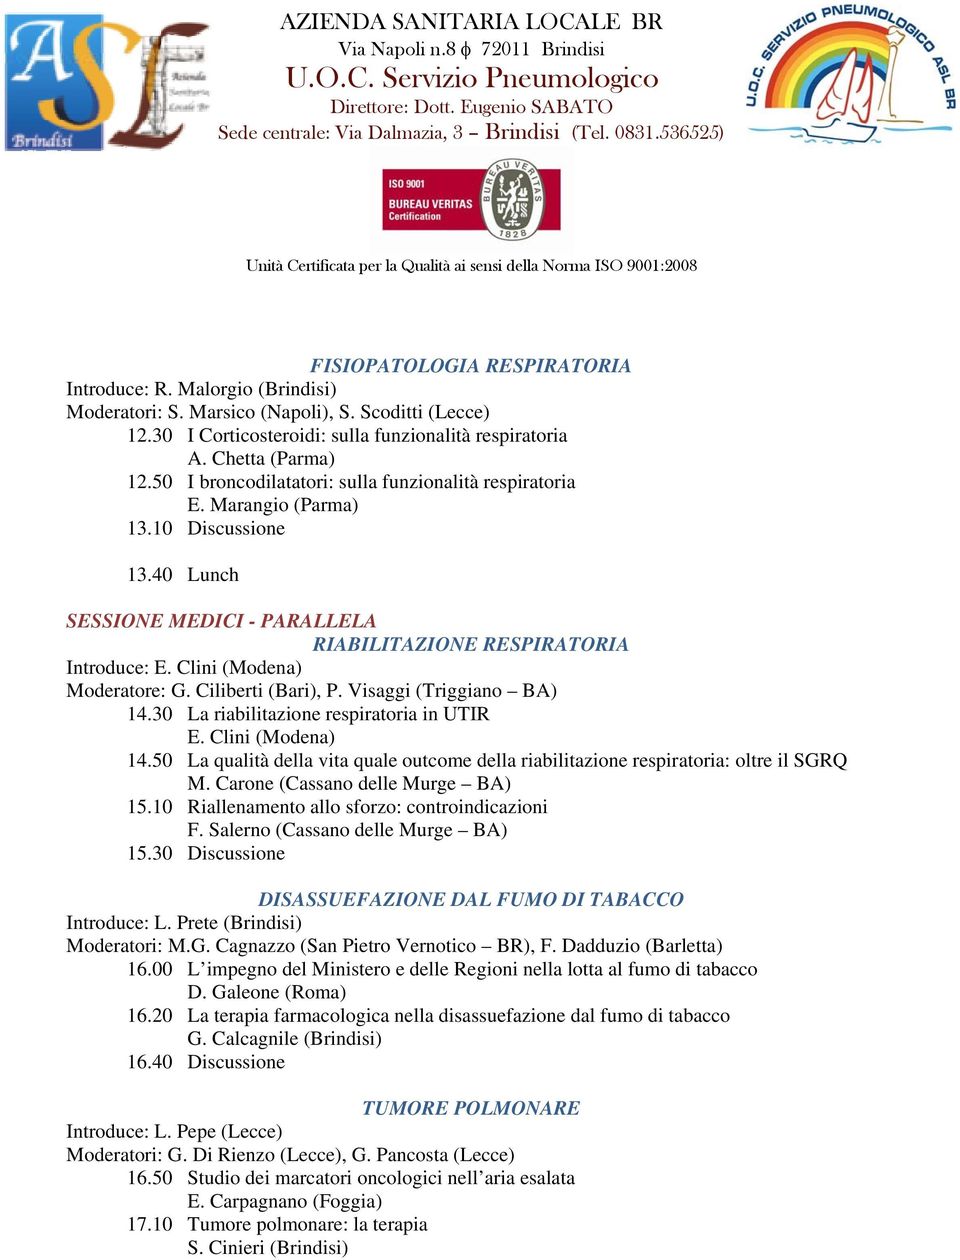 Clini (Modena) Moderatore: G. Ciliberti (Bari), P. Visaggi (Triggiano BA) 14.30 La riabilitazione respiratoria in UTIR E. Clini (Modena) 14.